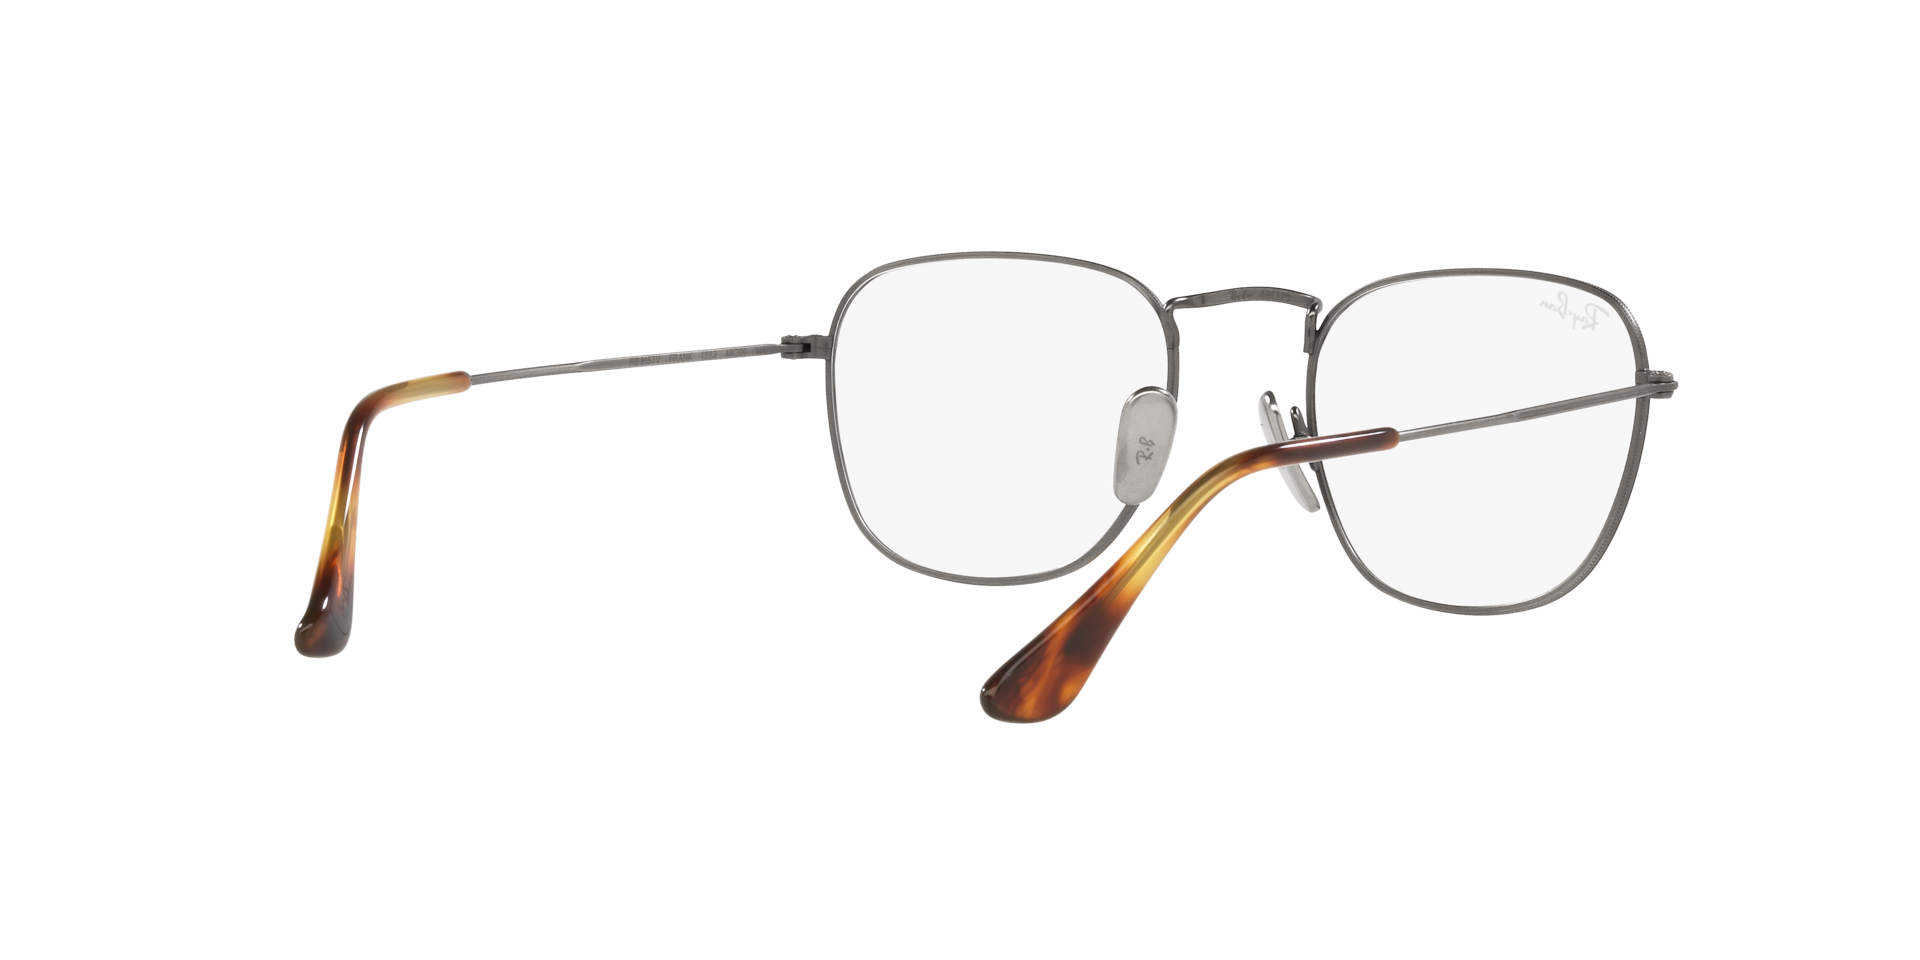 Buy Ray-Ban Frank Titanium Optics Eyeglasses Online.